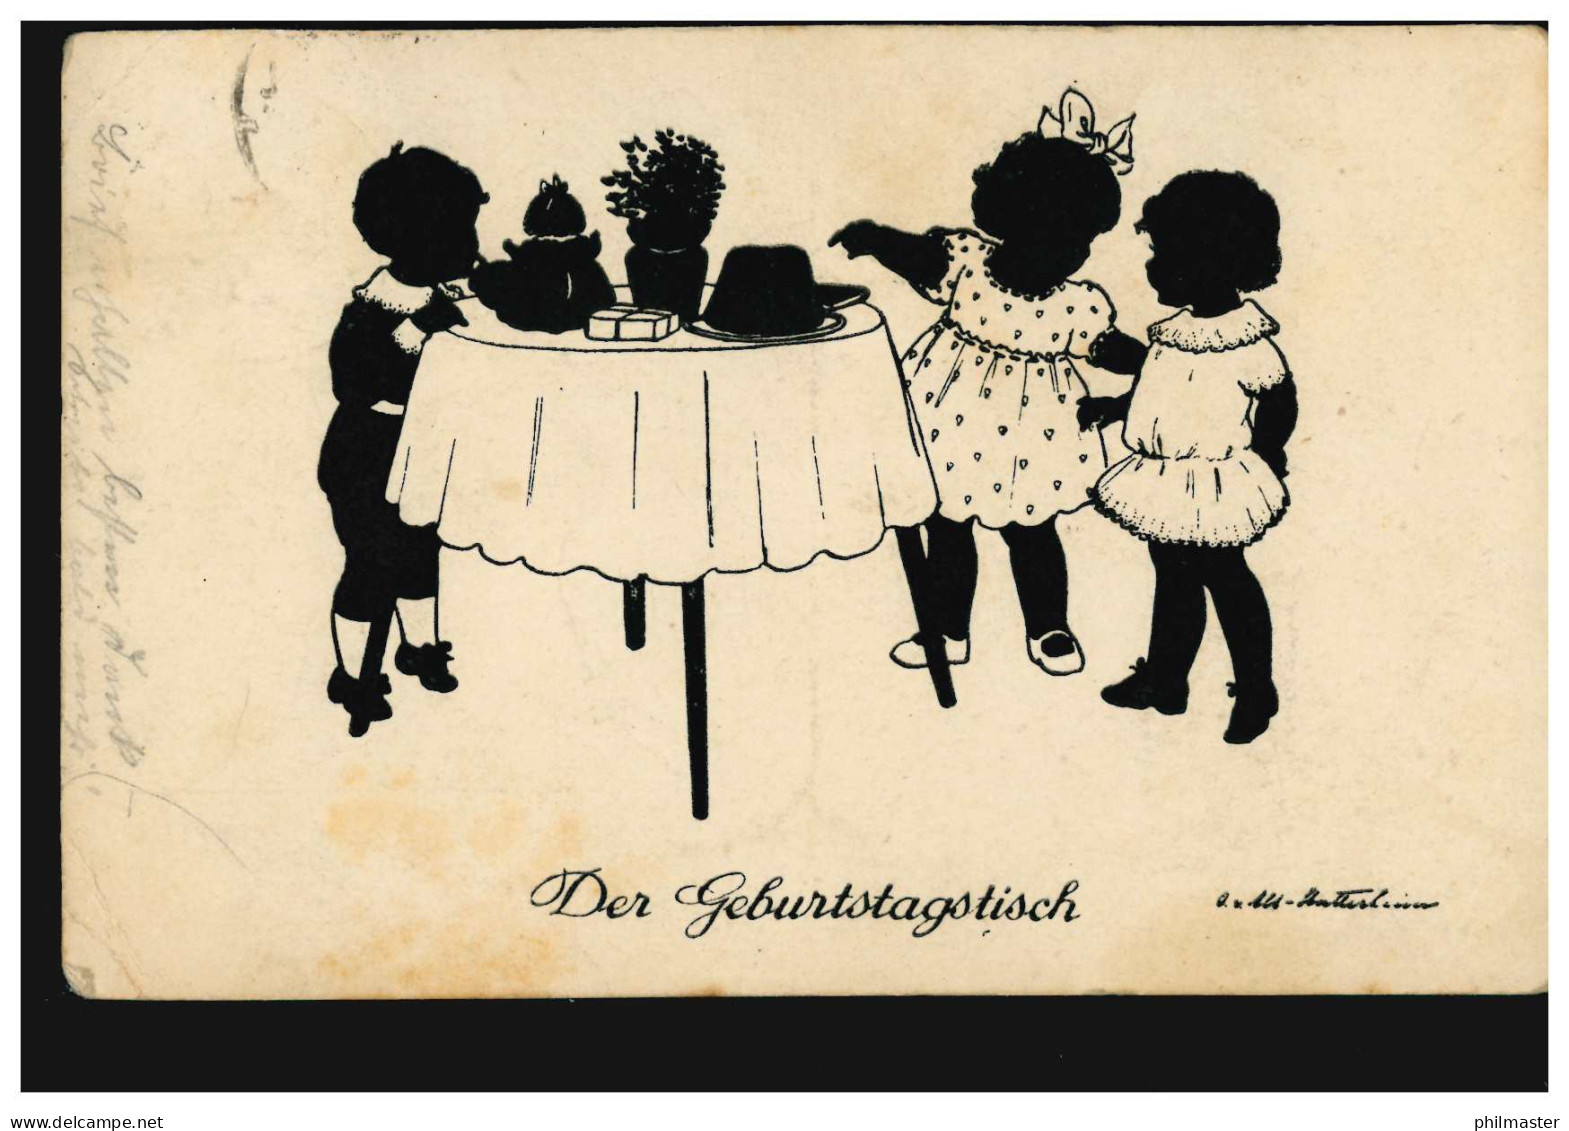 Scherenschnitt-AK Der Geburtstagstisch, Verlag G.K.V. Berlin, RHEYDT 23.6.1926 - Silhouetkaarten